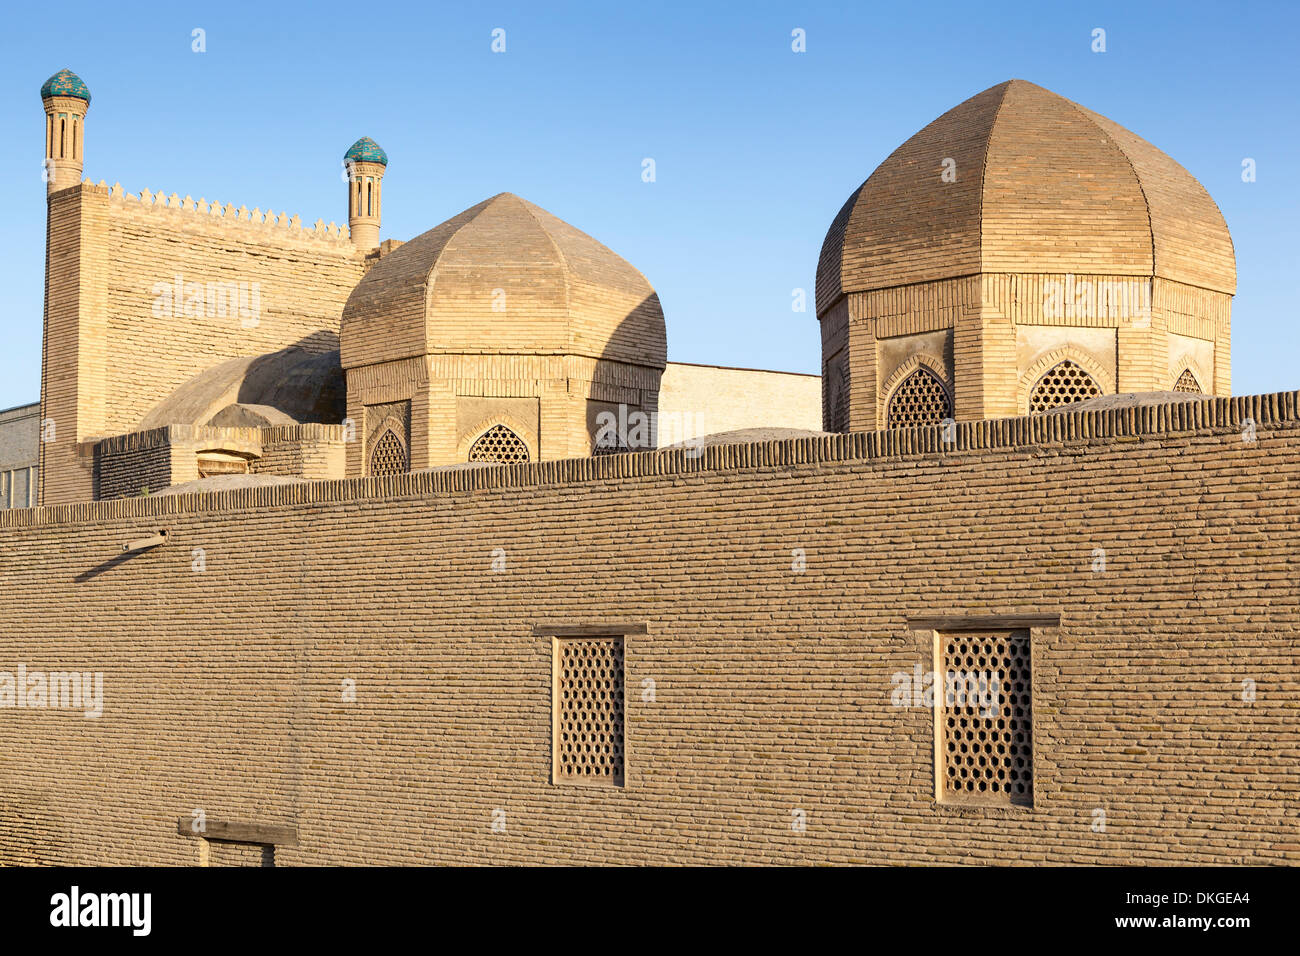 Magoki Attori Mosque, also known as Magoki Attari Mosque, Bukhara, Uzbekistan Stock Photo